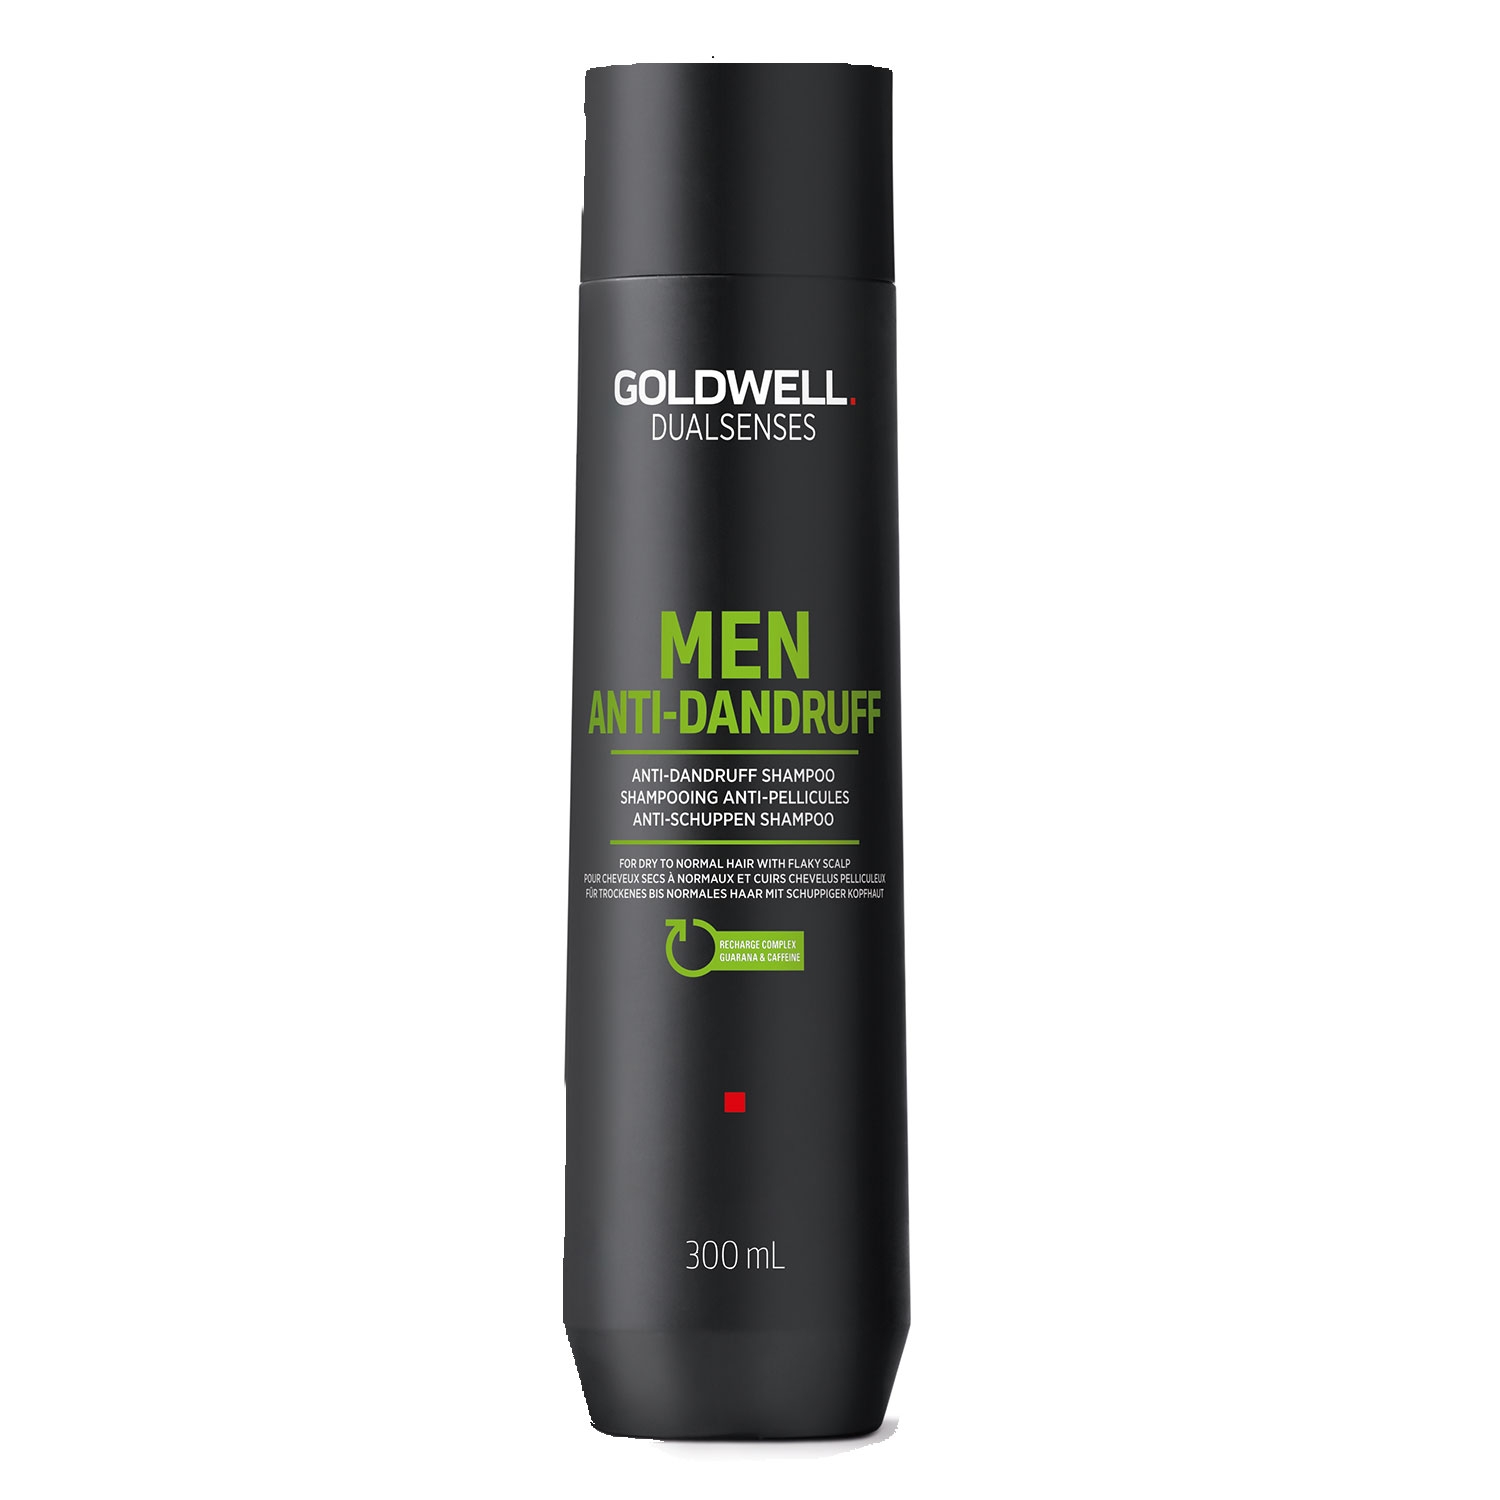 Produktbild von Dualsenses For Men - Anti-Dandruff Shampoo